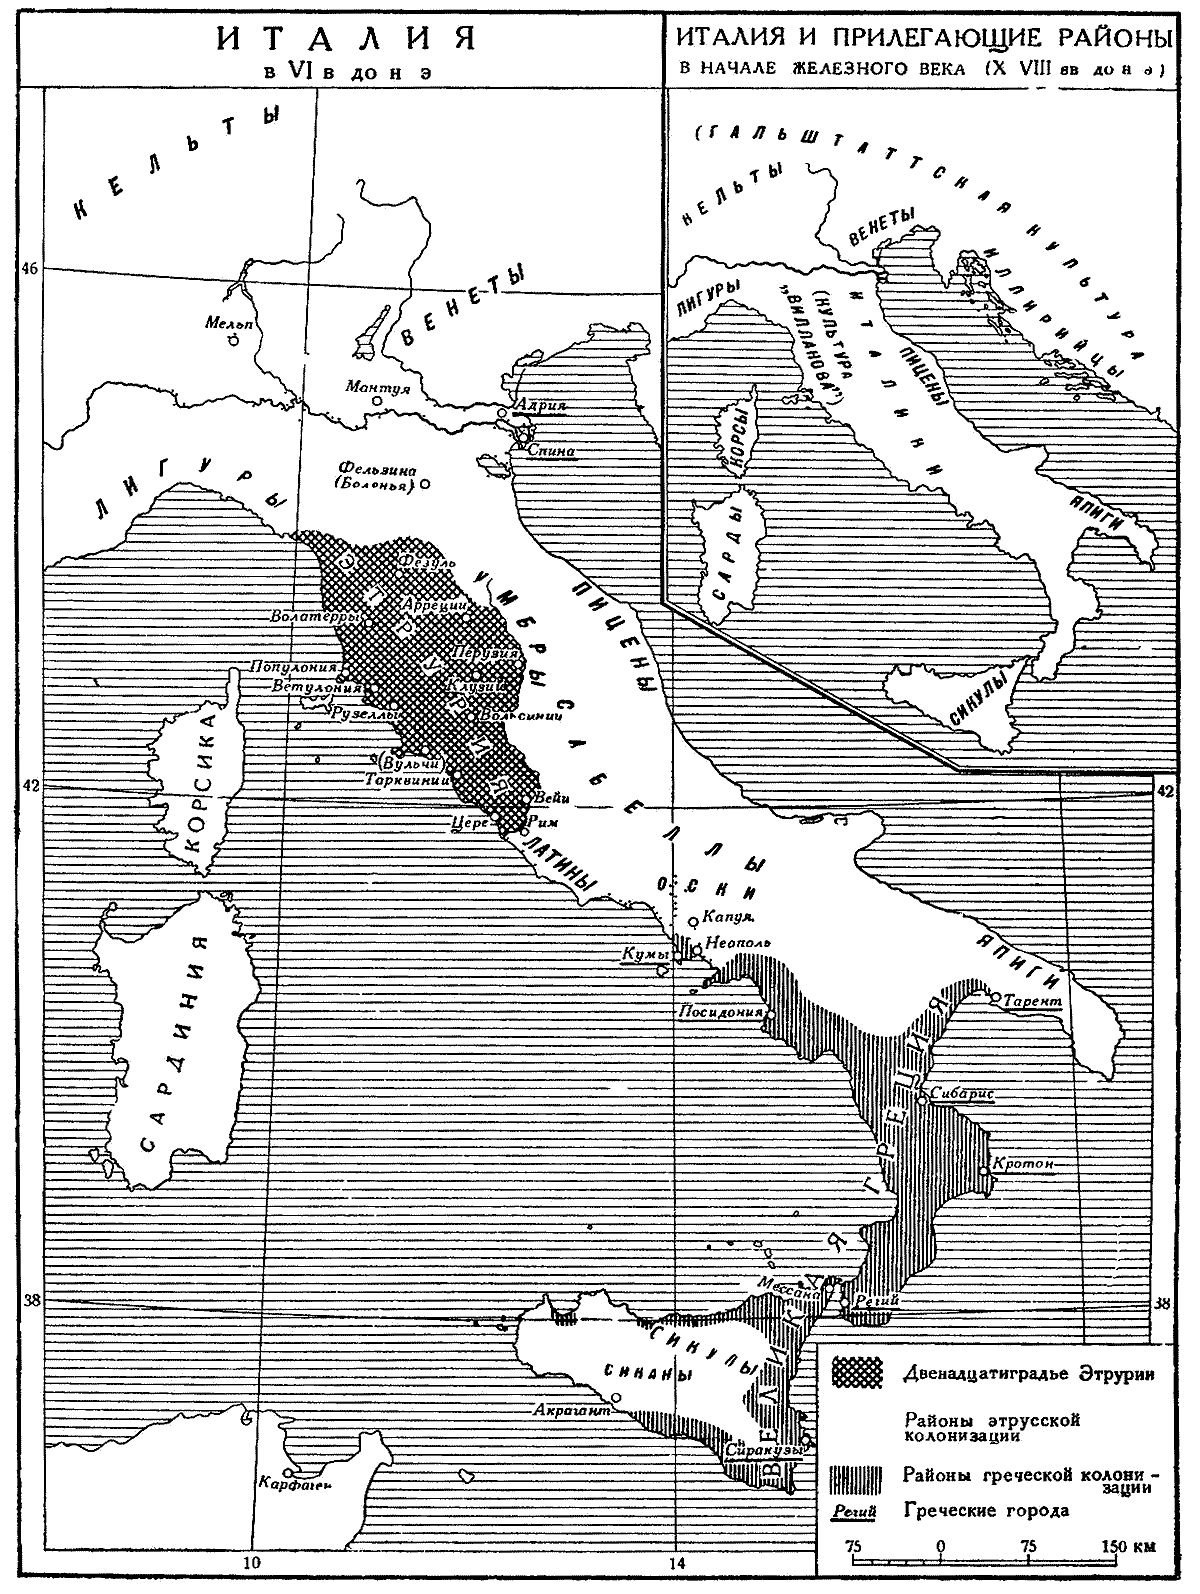 Карта. Италия в X-VI вв. до н.э.